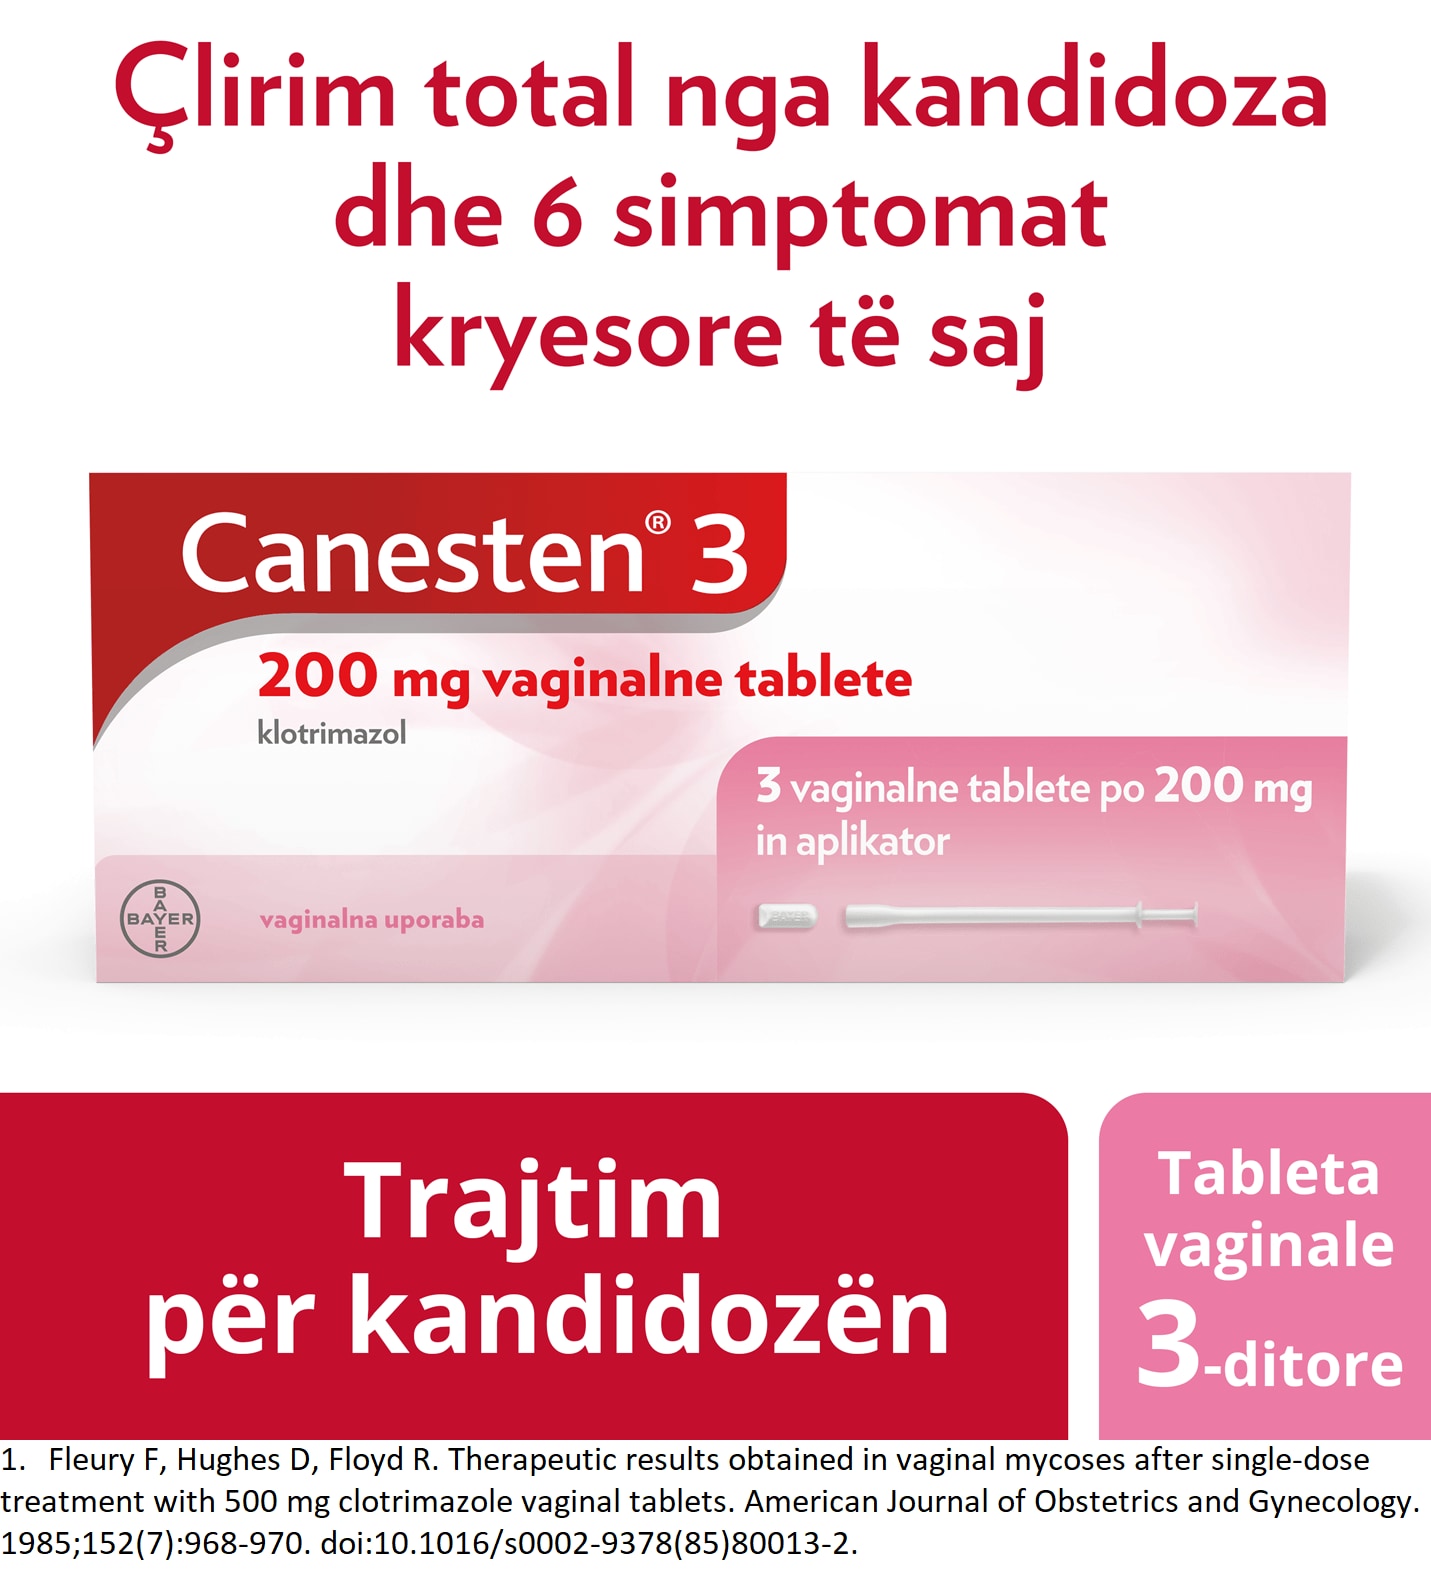 Canesten® 3 200 mg tableta vaginale: Tableta vaginale Canesten® për kandidozën tableta 200mg dhe aplikator, me titullin sipër: Lehtësim efektiv nga kandidoza dhe 6 simptomat kryesore të saj1